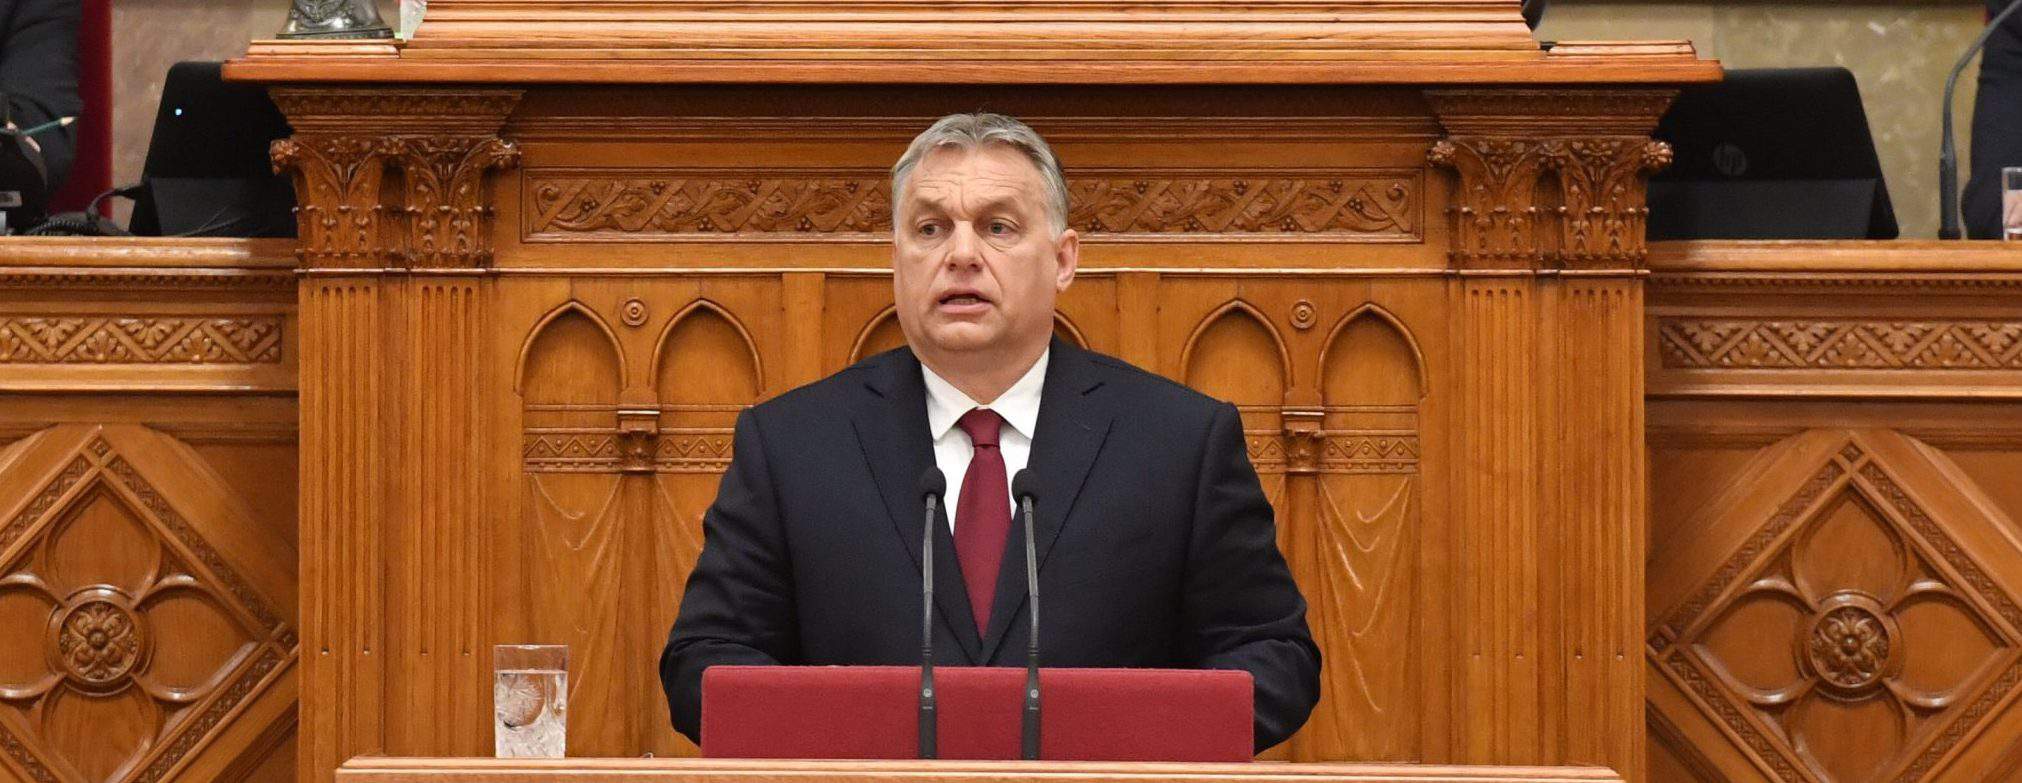 匈牙利总理欧尔班